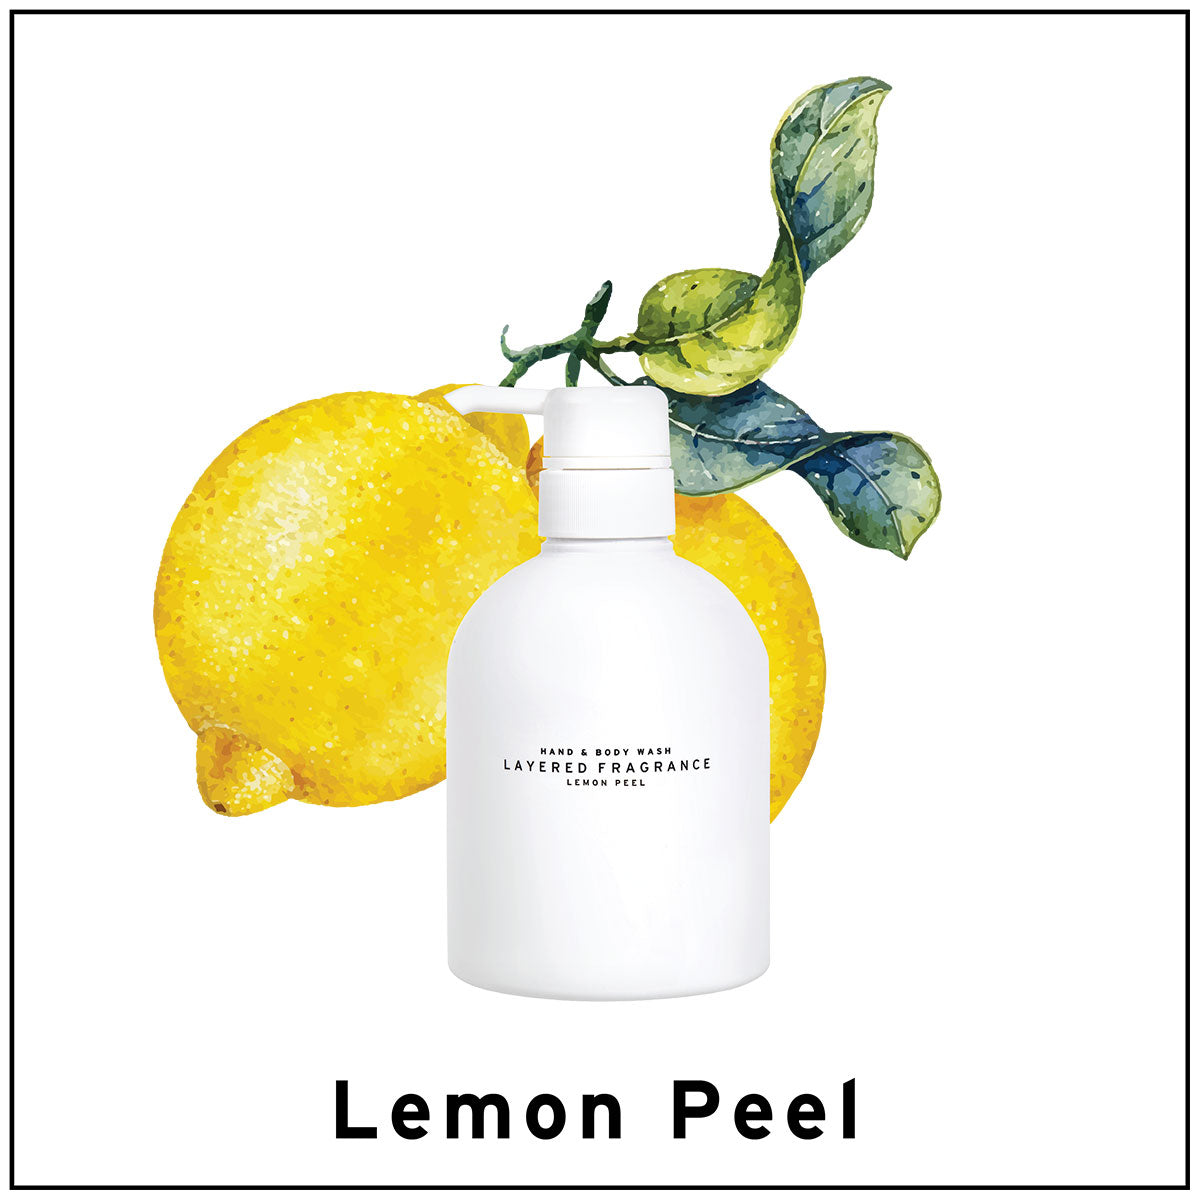 Hand & Body Wash #Lemon Peel